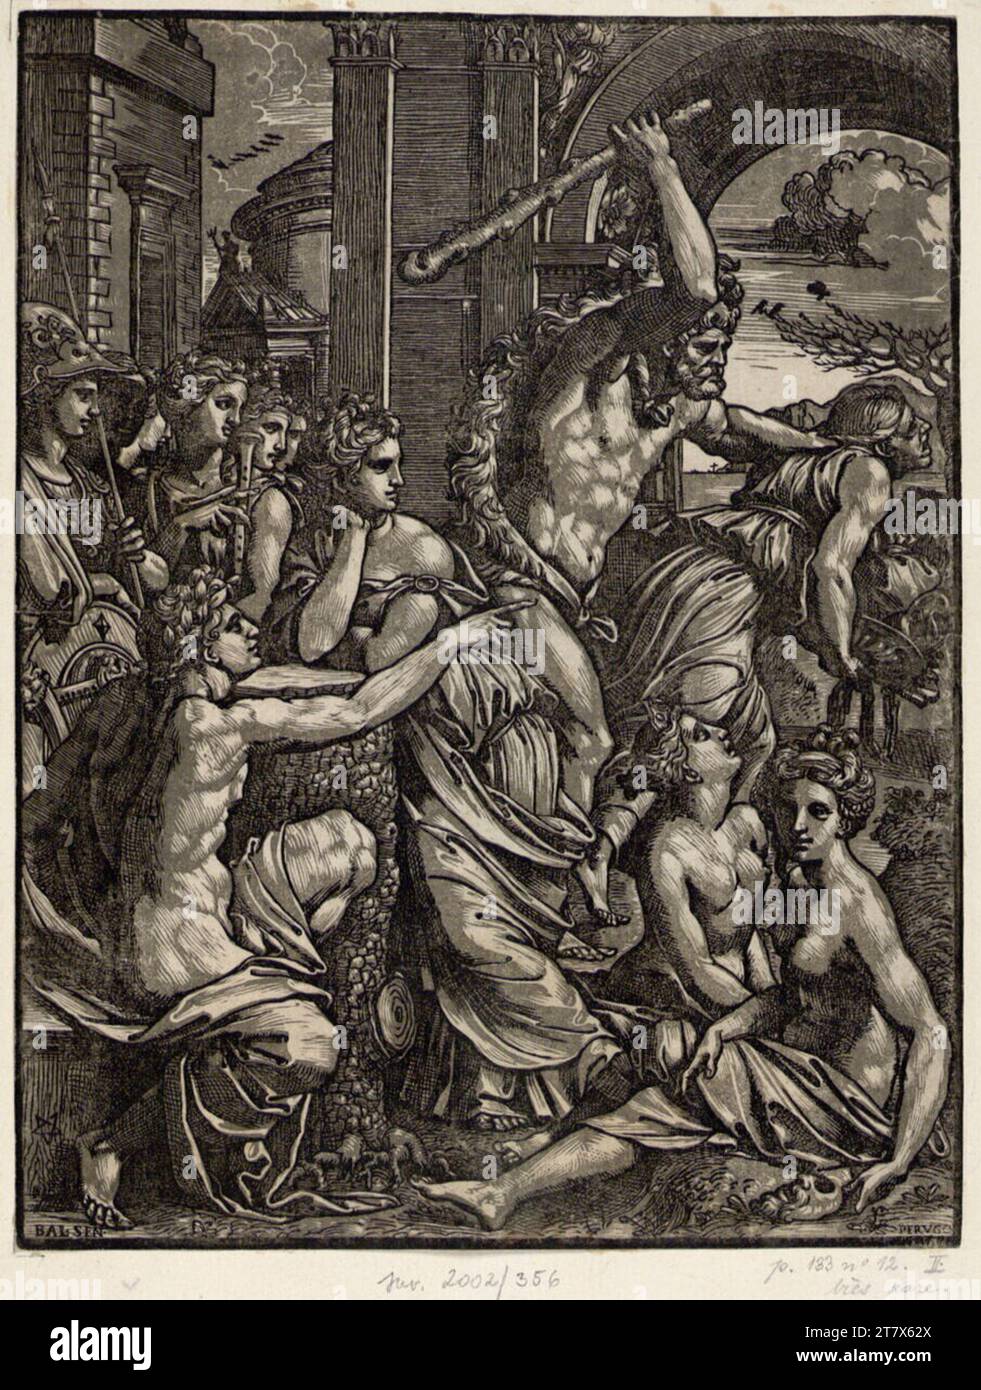 Ugo da Carpi Ercole vende l'avarizia dal tempio delle muse. Clair obscur Woodcut, due lastre (grigio-marrone); seconda versione intorno al 1517-1520 Foto Stock